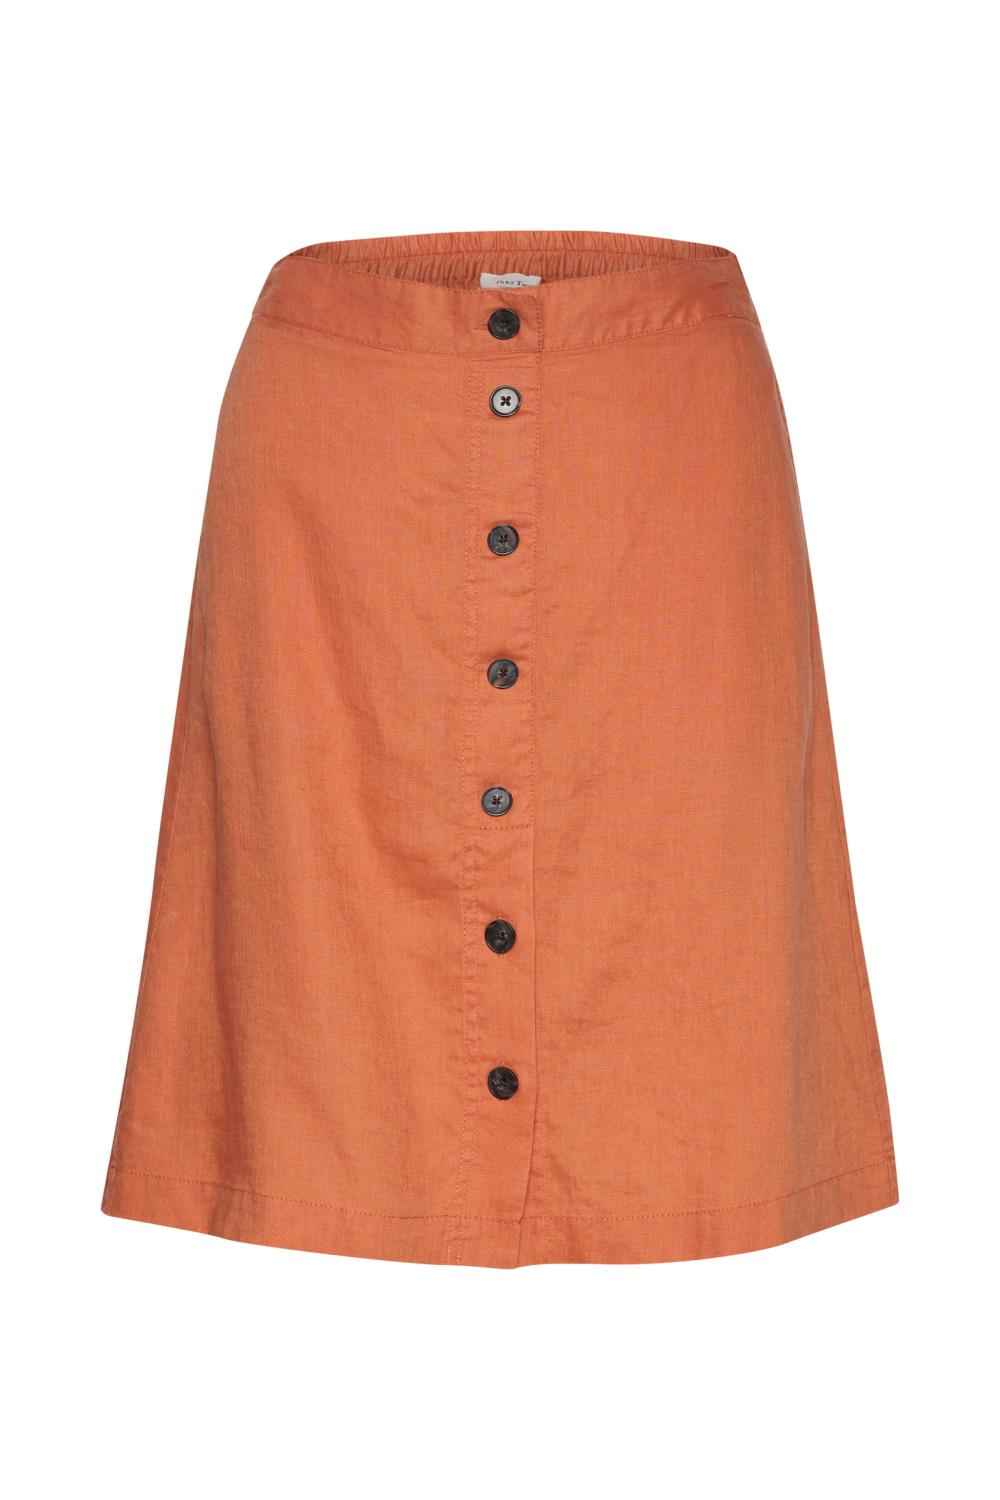 Part Two Palina Skirt, oransje linskjørt